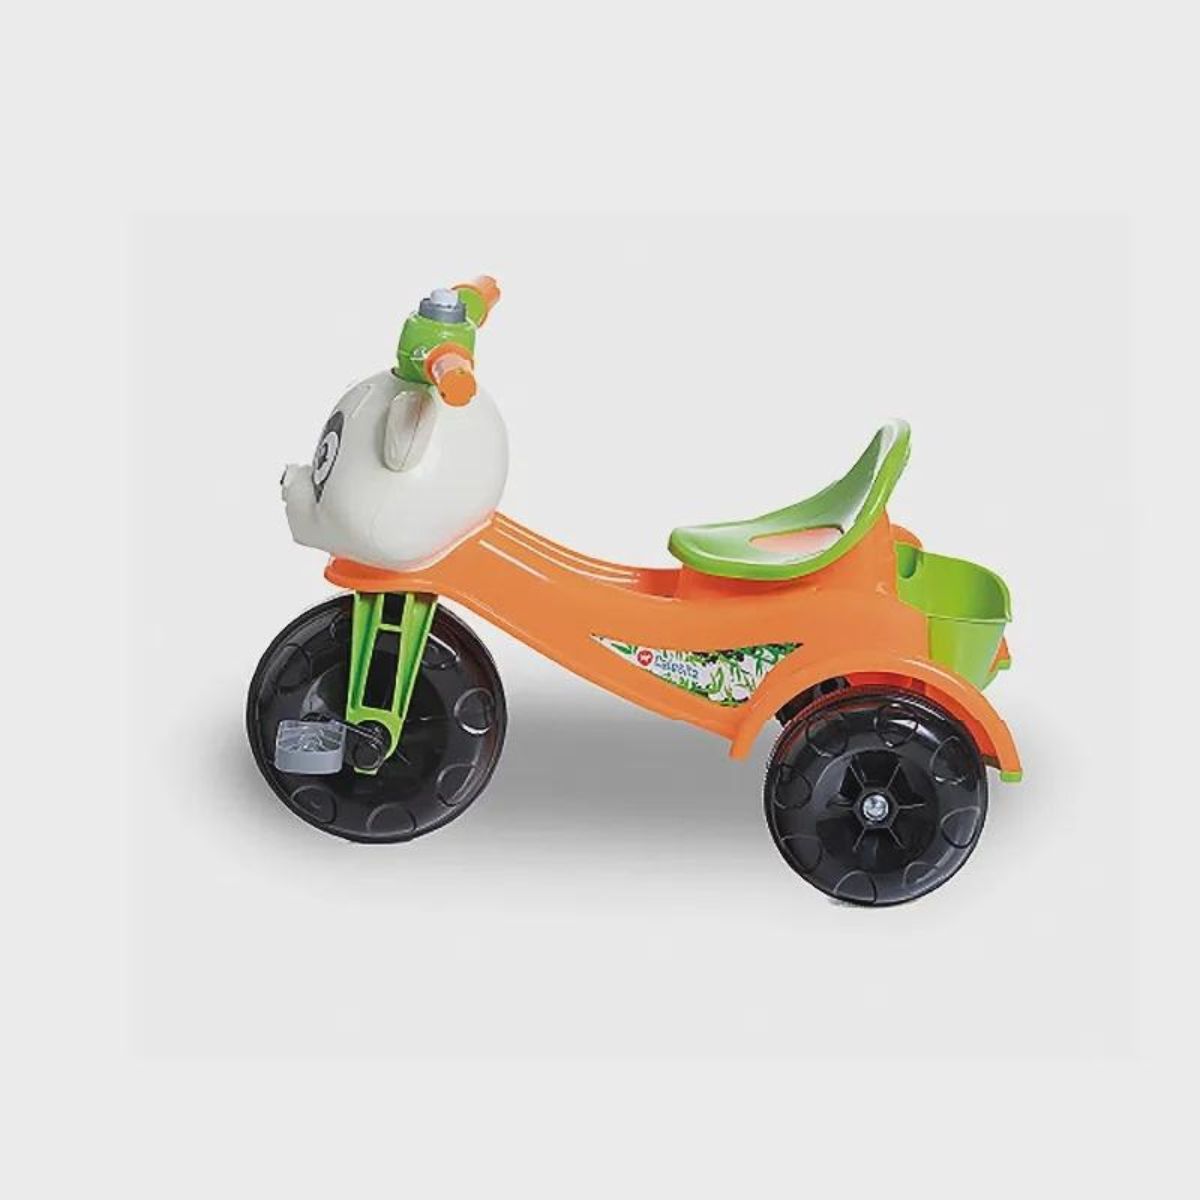 Mami Brinquedos - Black Friday Promoção - Triciclo Passeio e Pedal